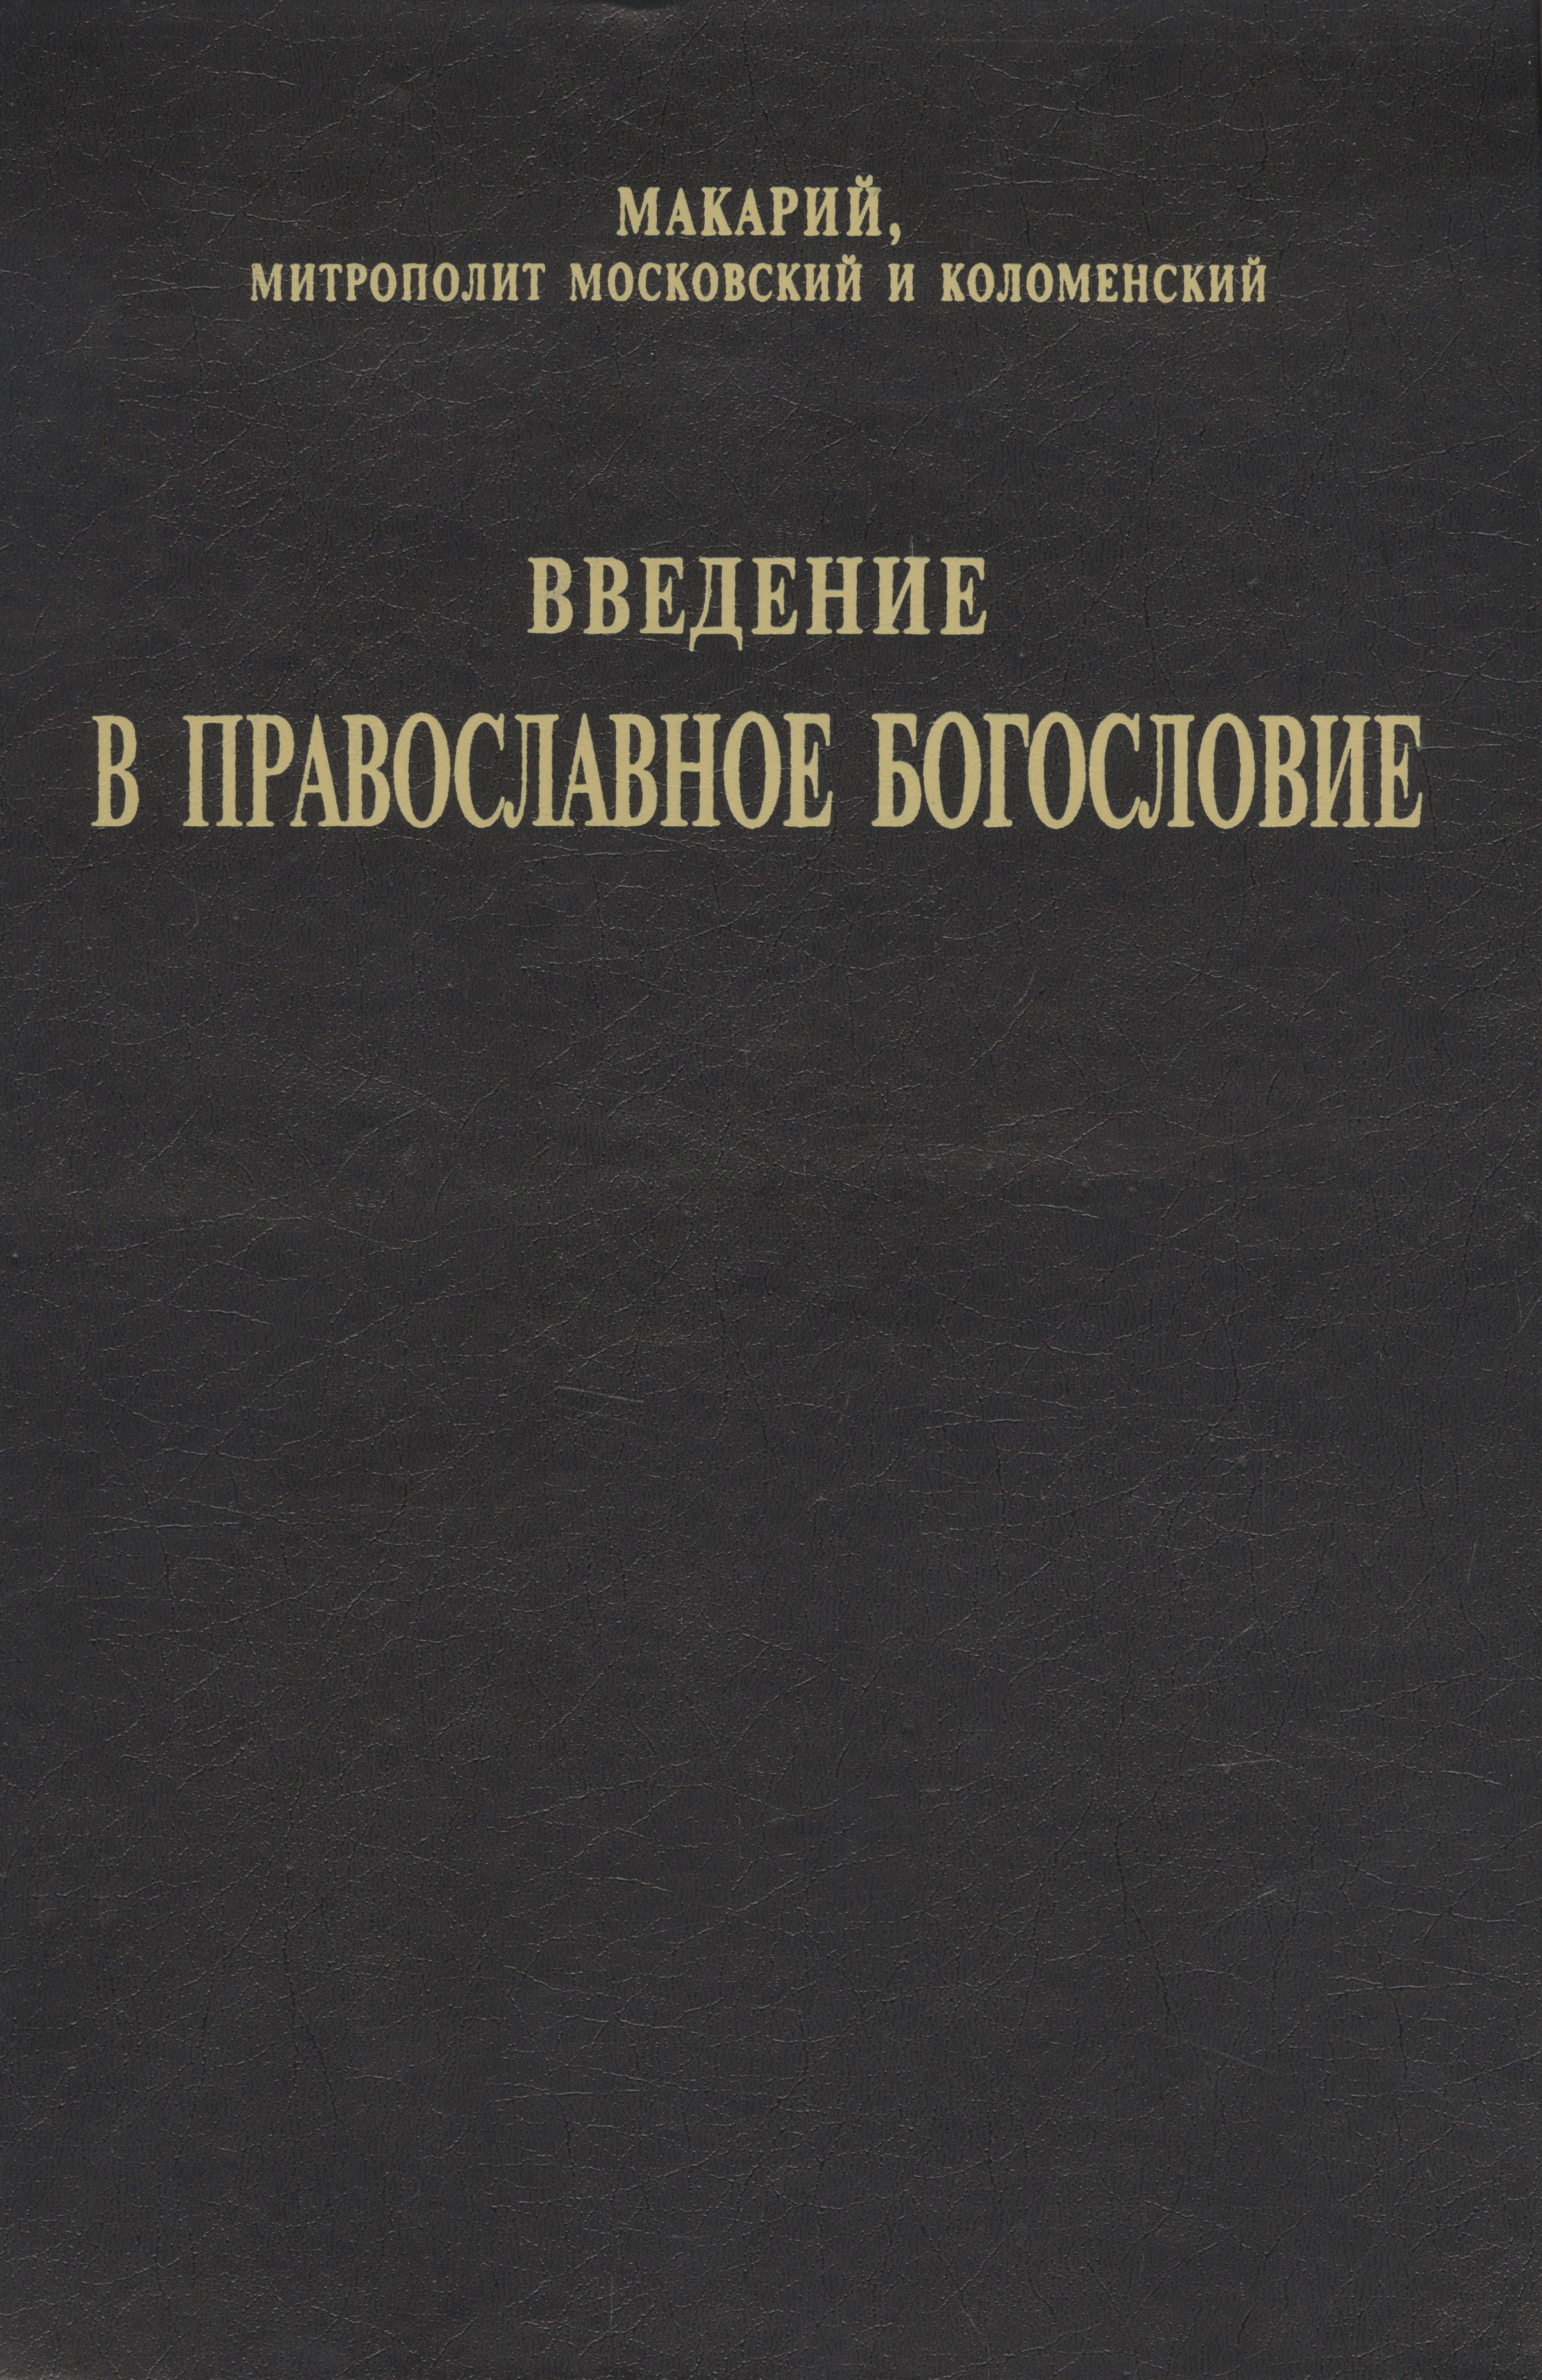 беркхоф луи систематическое богословие Макарий Введение в православное Богословие